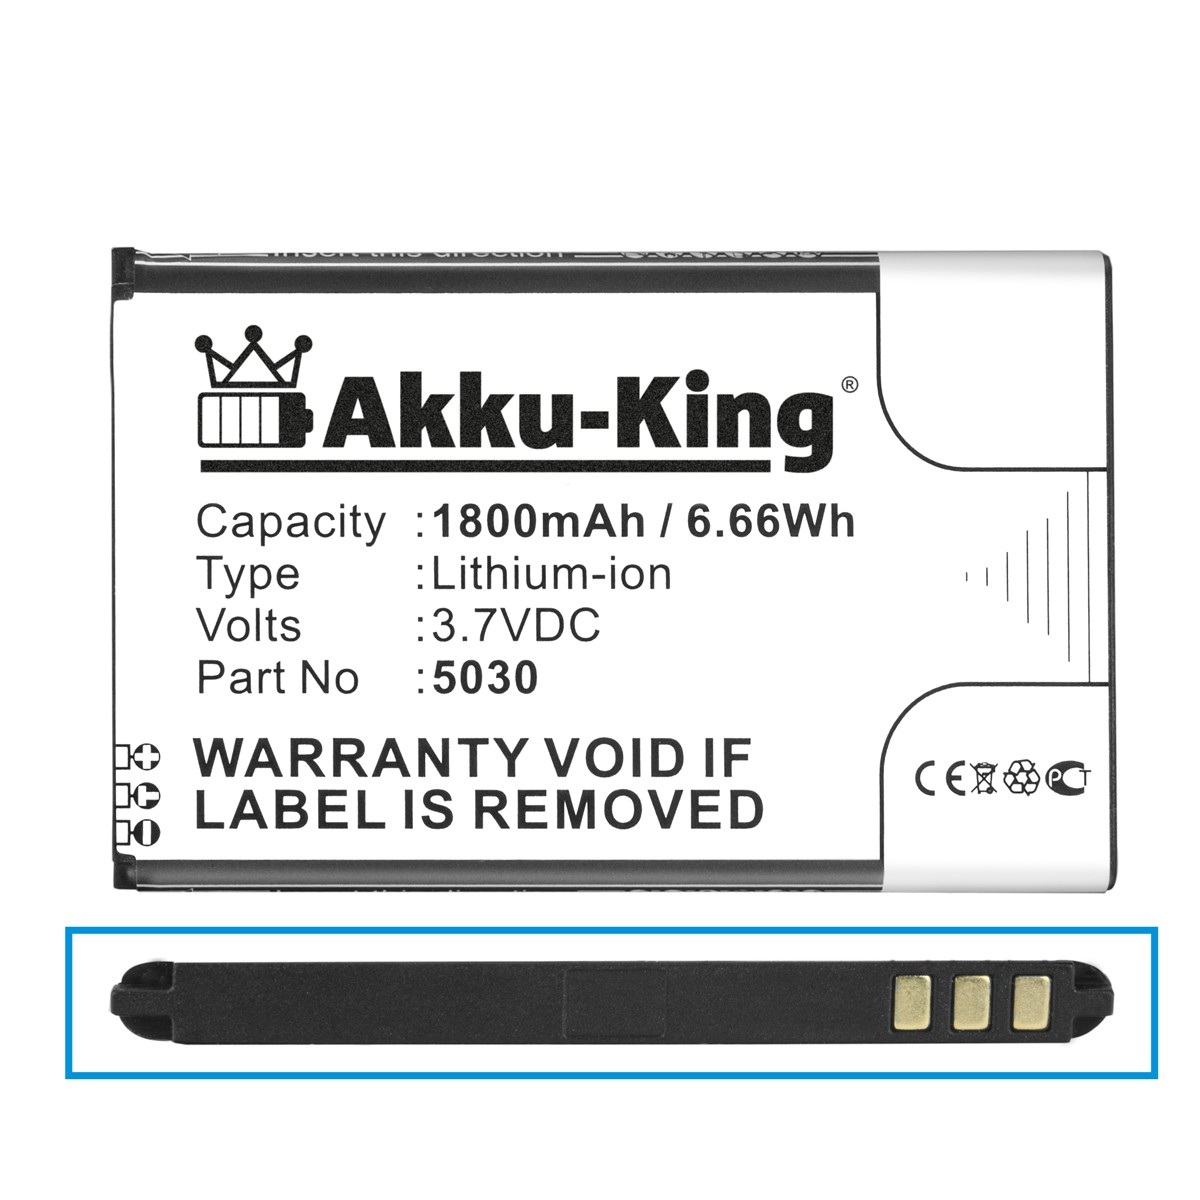 Akku Volt, kompatibel mit 5030 Wiko 1800mAh Handy-Akku, AKKU-KING Li-Ion 3.7